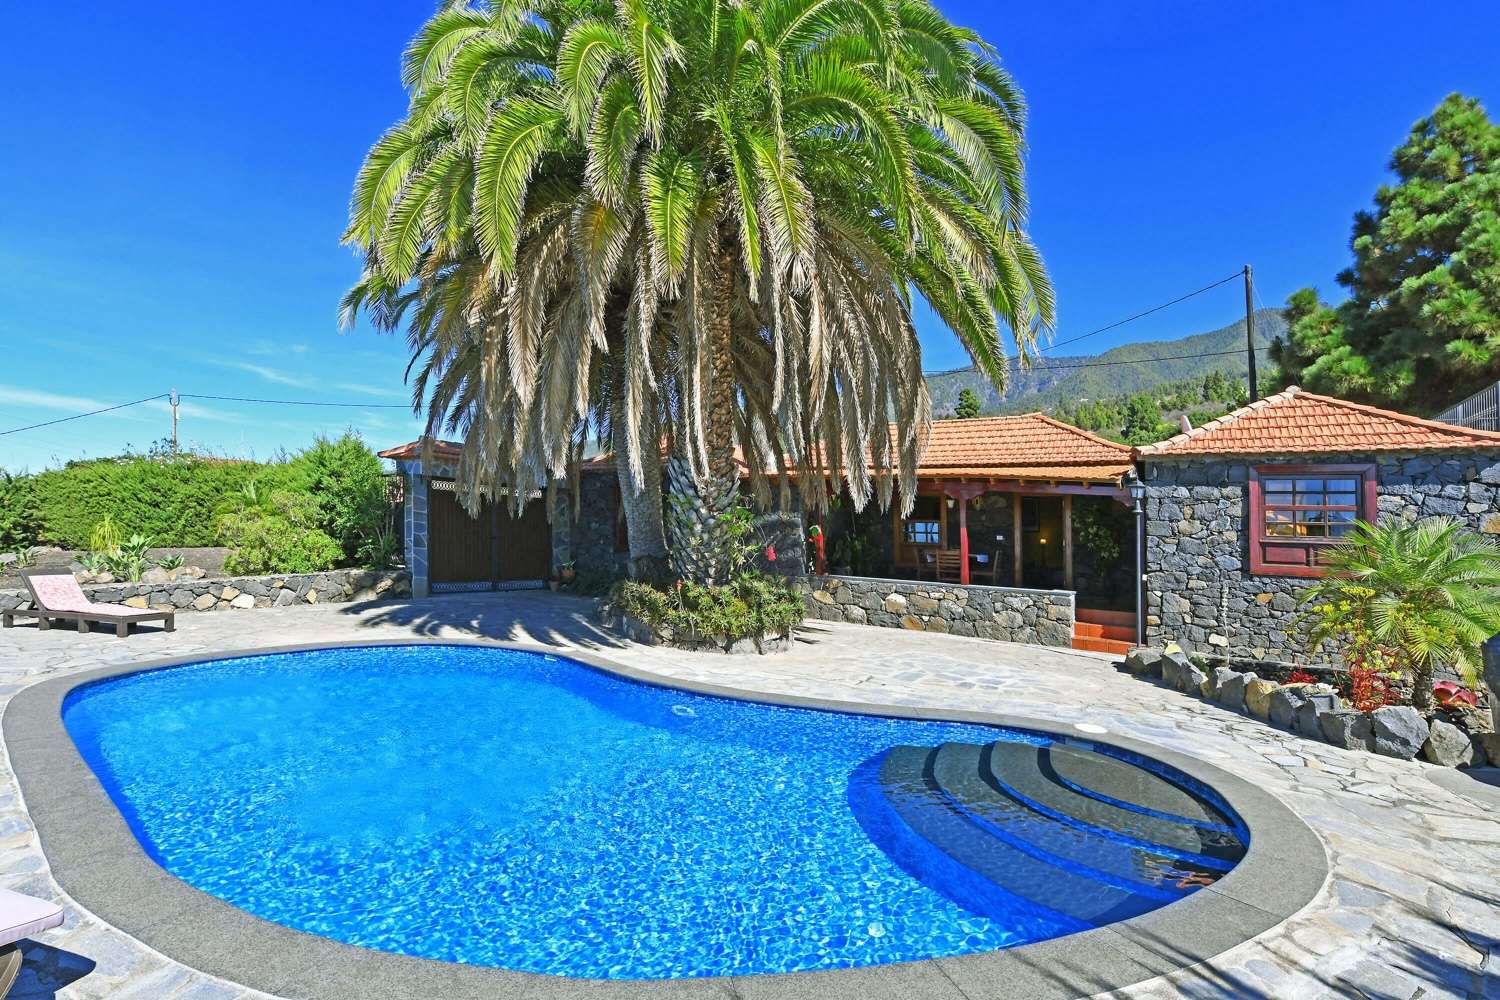 Krásný dvoupokojový dům v původní kanárské kamenné architektuře s nádhernou zahradou s majestátními palmami a soukromým bazénem